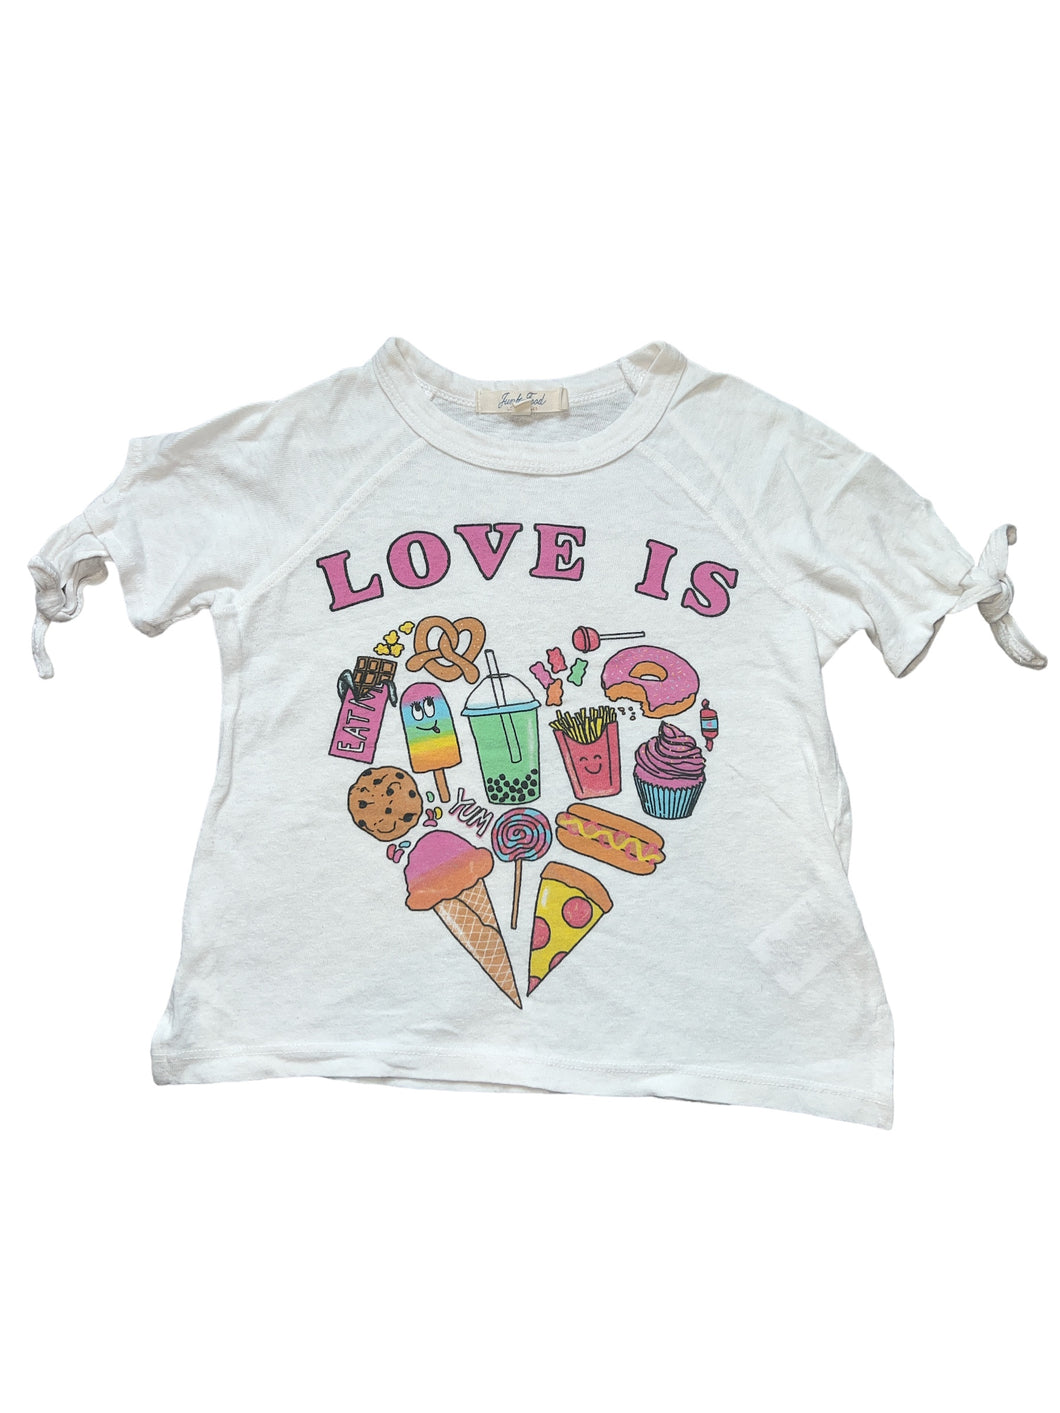 Junk Food girls “Love Is” food graphic  tie shoulder top XS(5)